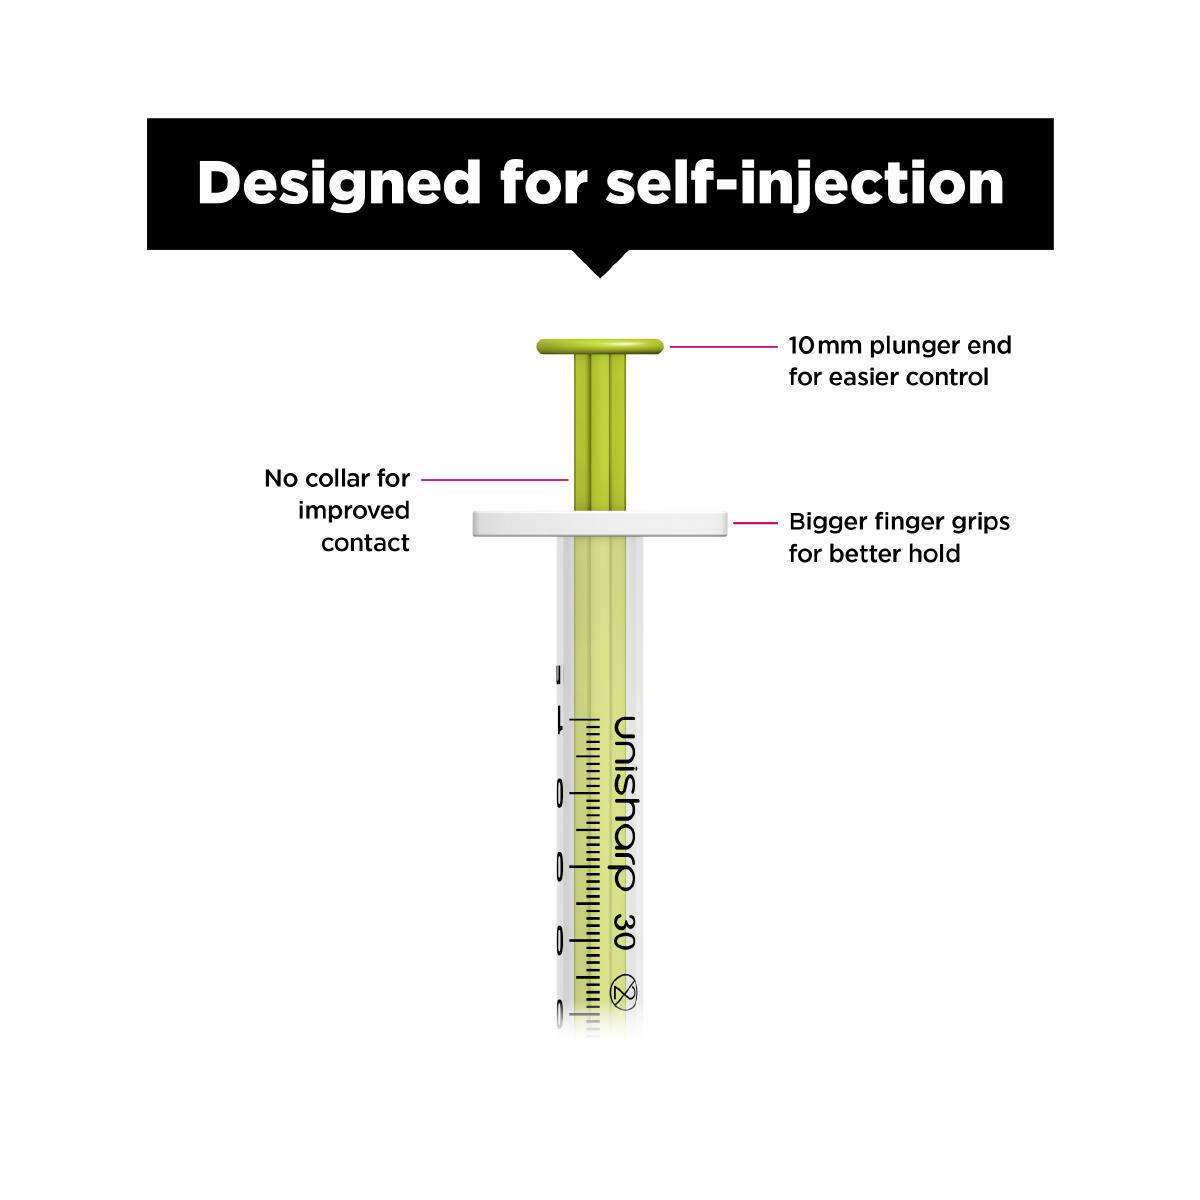 1ml 0.5 inch 30g Lime Unisharp Syringe and Needle u100 - UKMEDI